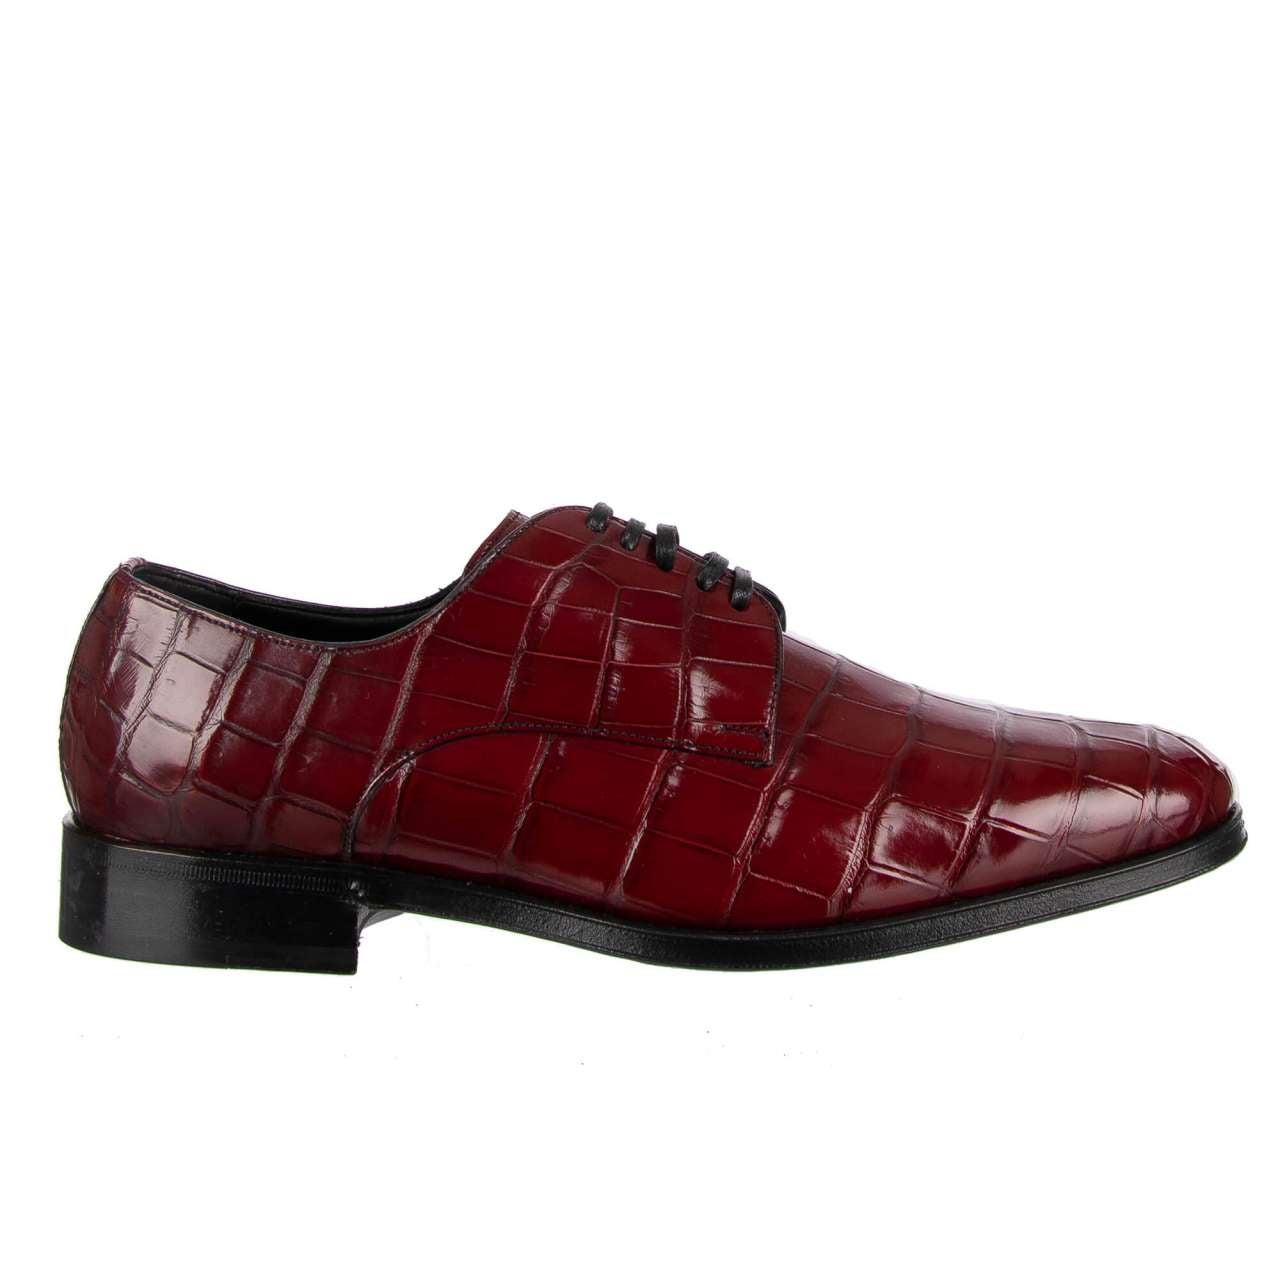 Dolce & Gabbana Crocodile Leather Derby Shoes VENEZIA Bordeaux Red EUR 39 For Sale